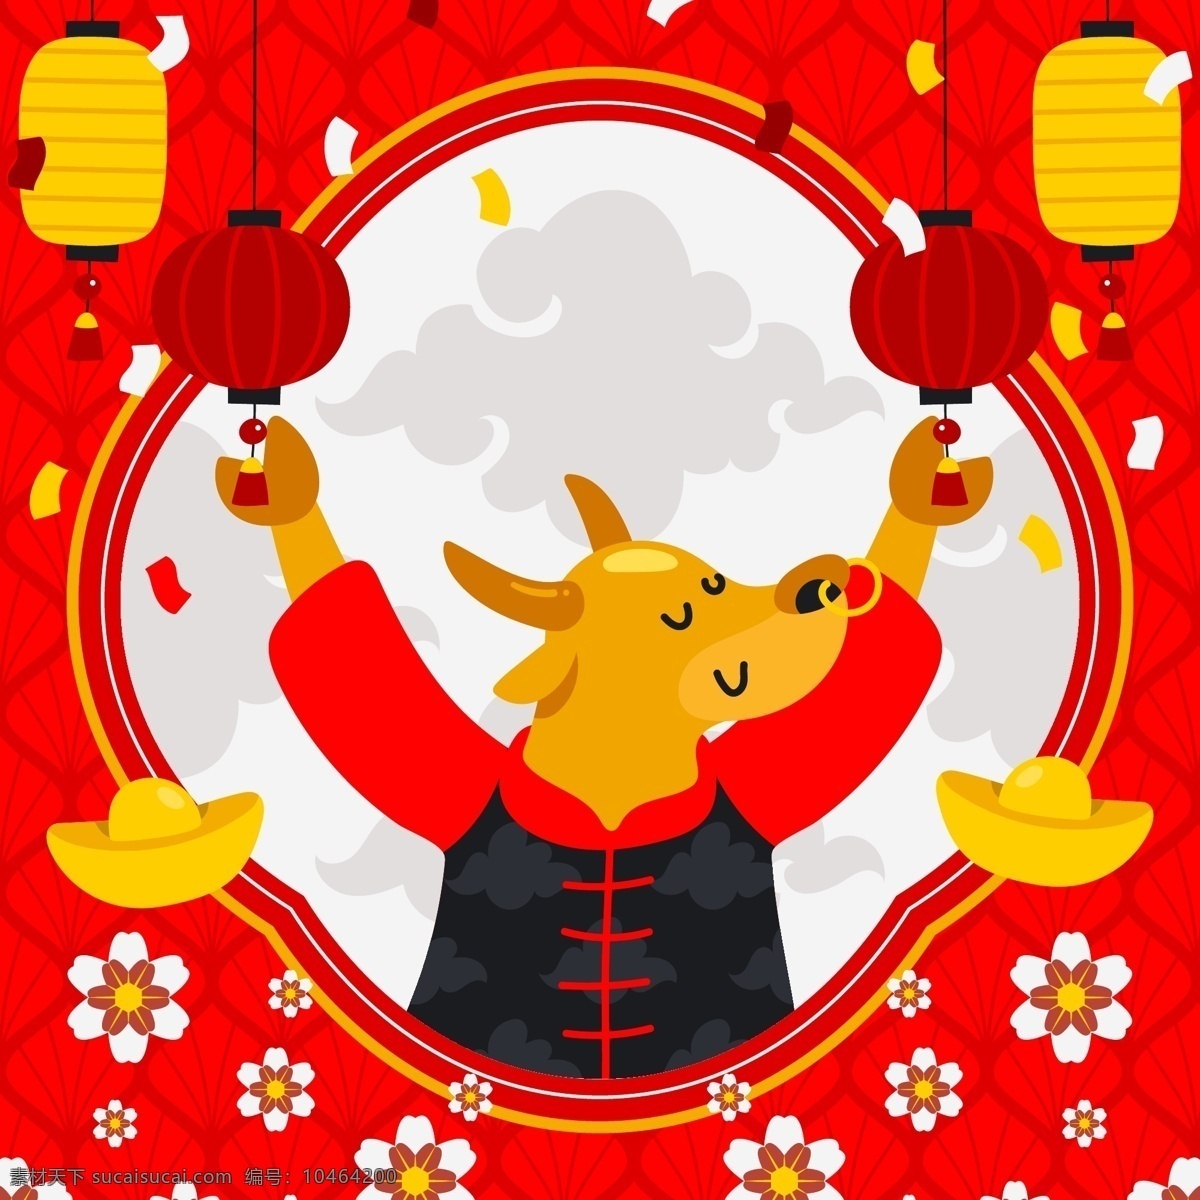 2021 新年 背景图片 背景 海报 中国年 新年快乐 中国元素 节日 元旦 新春快乐